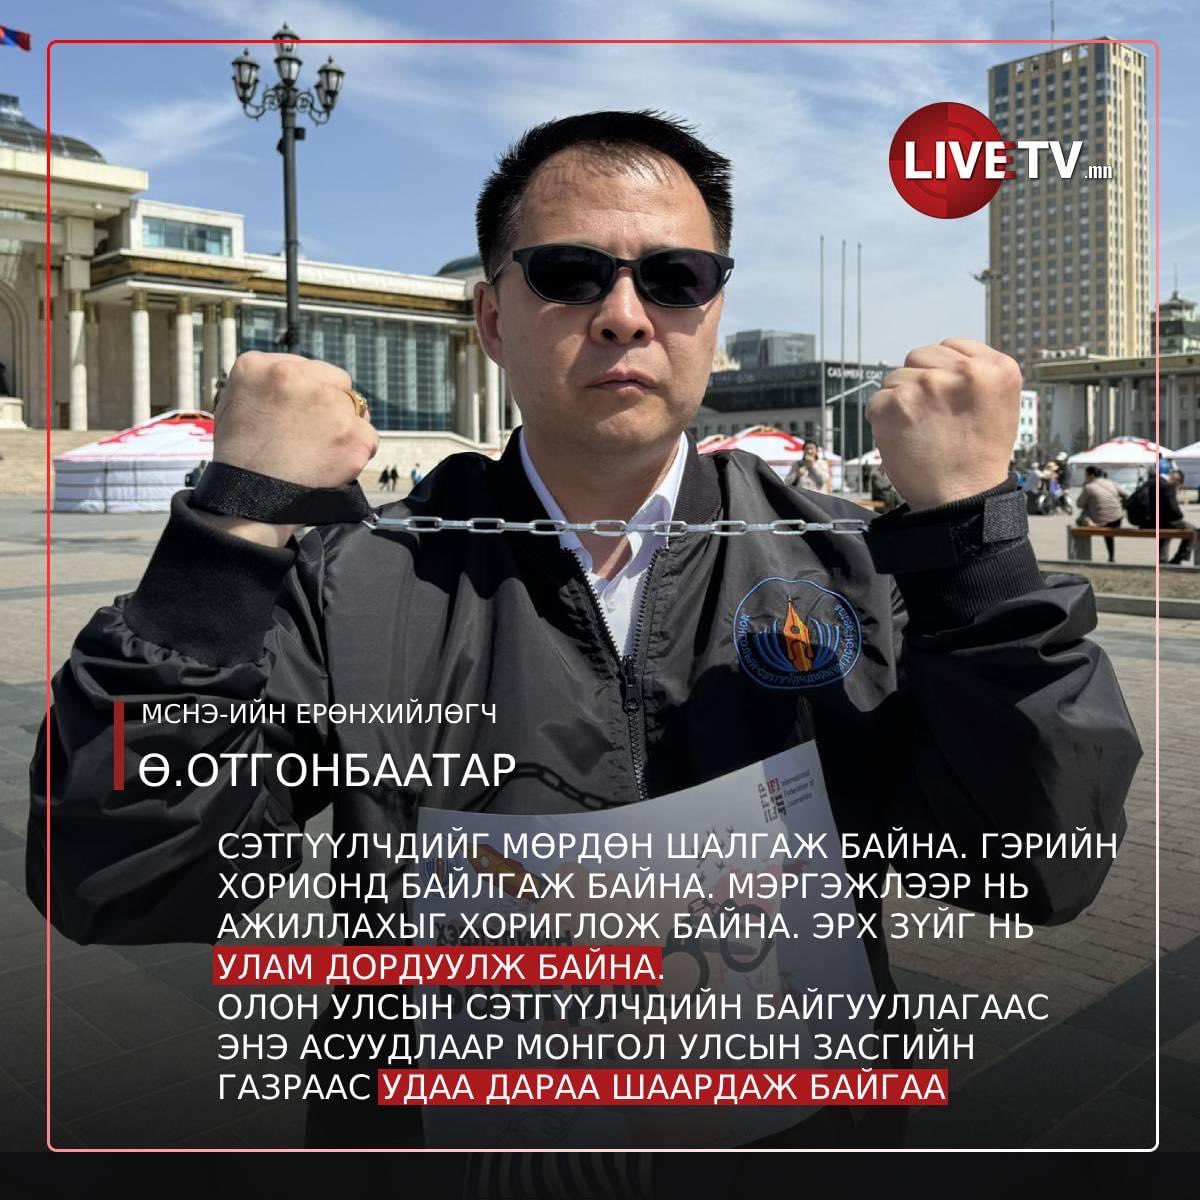 'Сэтгүүлчдийг мөрдөн шалгаж байна. Гэрийн хорионд байлгаж байна. Мэргэжлээр нь ажиллахыг хориглож байна. Эрх зүйг нь улам дордуулж байна. Олон улсын сэтгүүлчдийн байгууллагаас энэ асуудлаар Монгол Улсын Засгийн газраас удаа дараа шаардаж байгаа' МСНЭ-ийн ерөнхийлөгч…